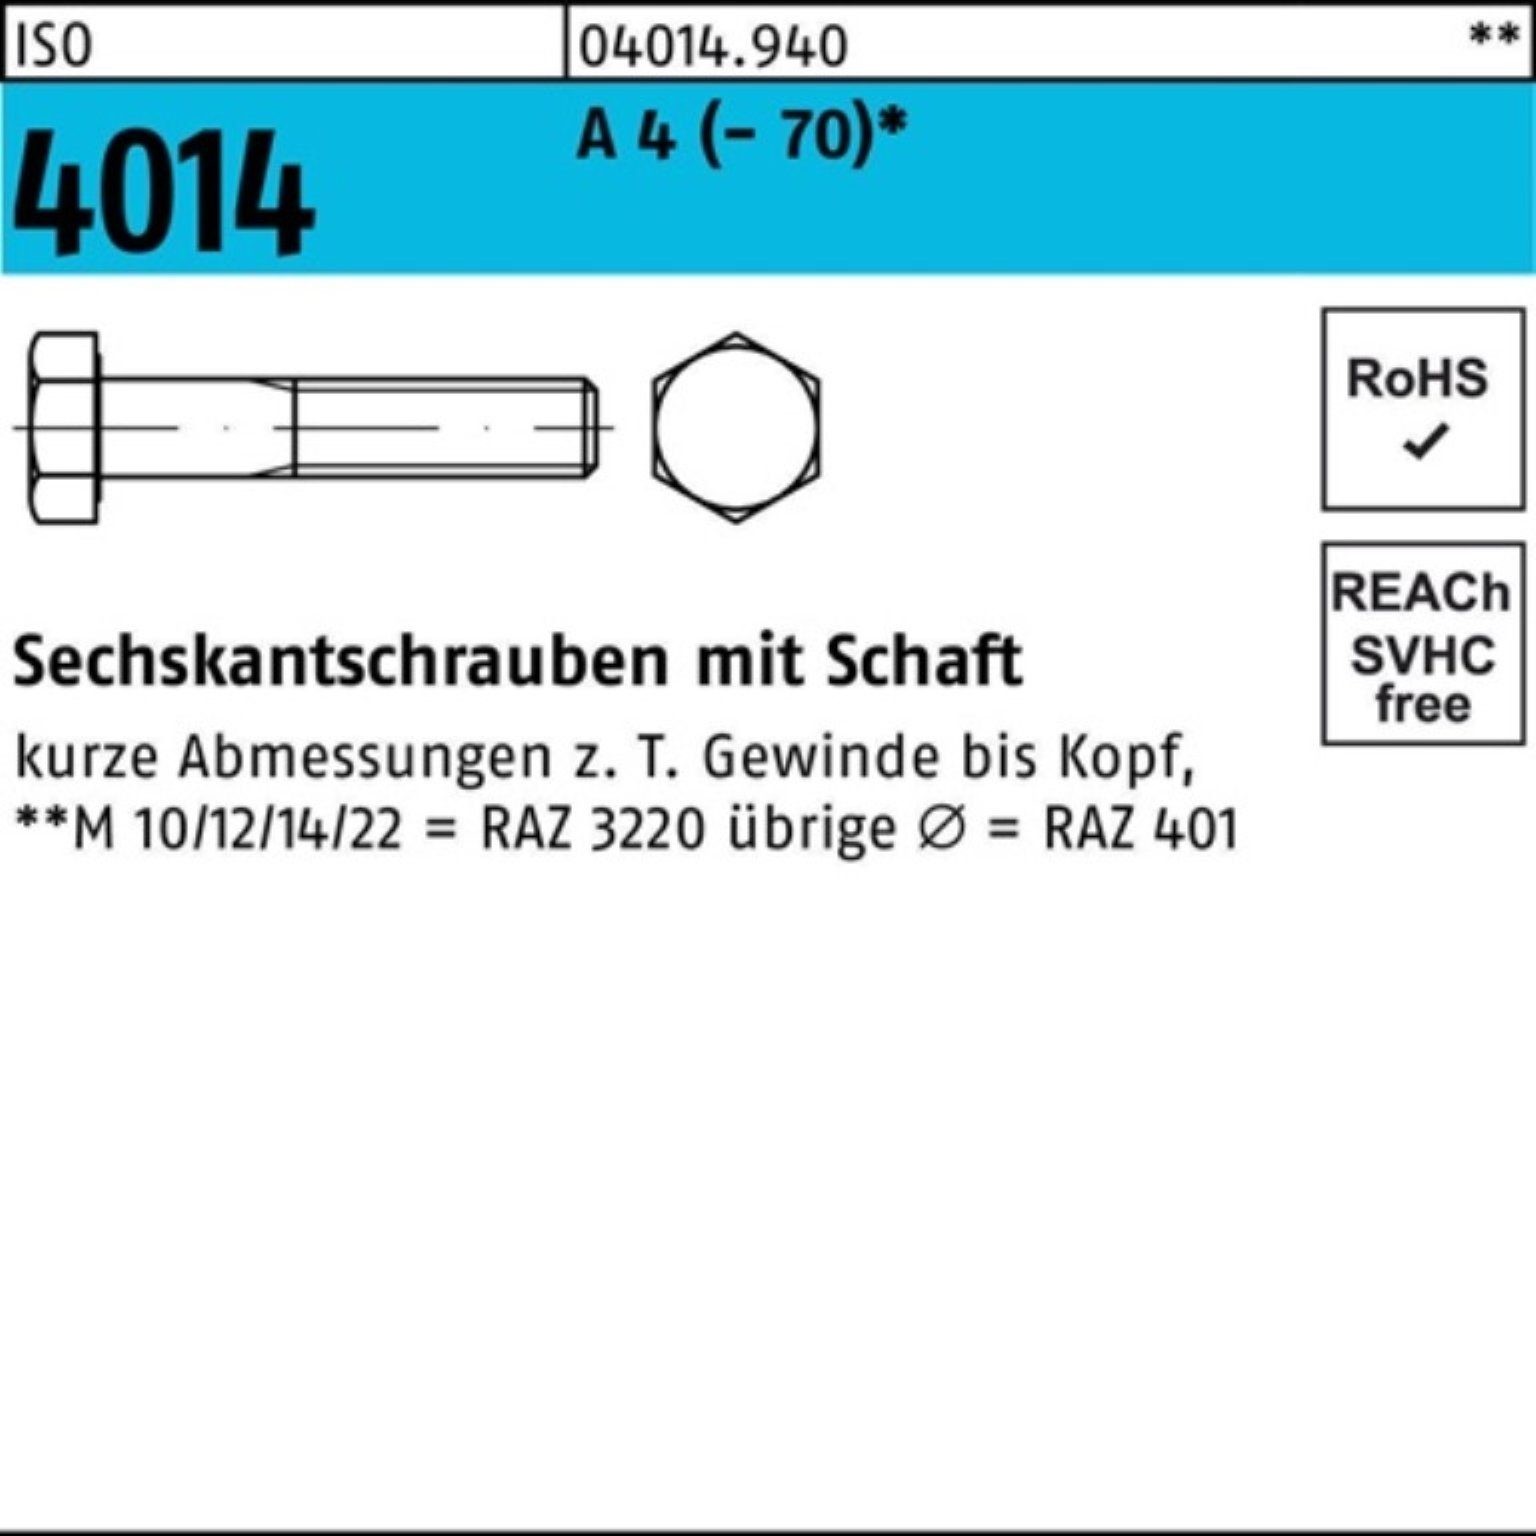 Bufab Sechskantschraube 100er Pack Sechskantschraube ISO 4014 Schaft M8x 35 A 4 (70) 100 St